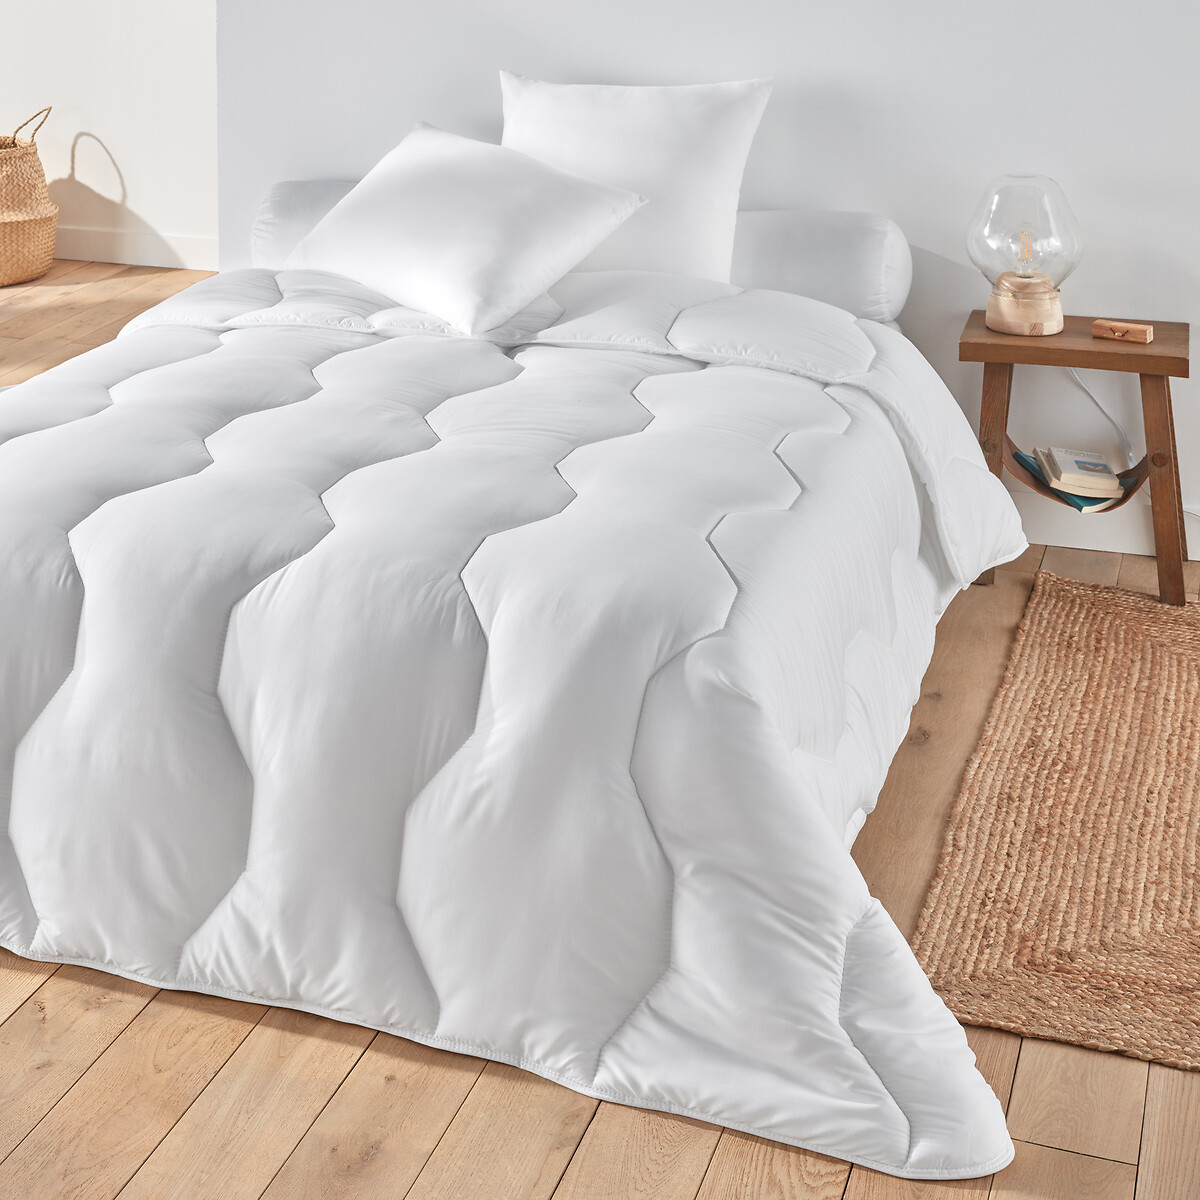 Одеяло Pratique 100 полиэстер качество стандарт 140 x 200 см белый